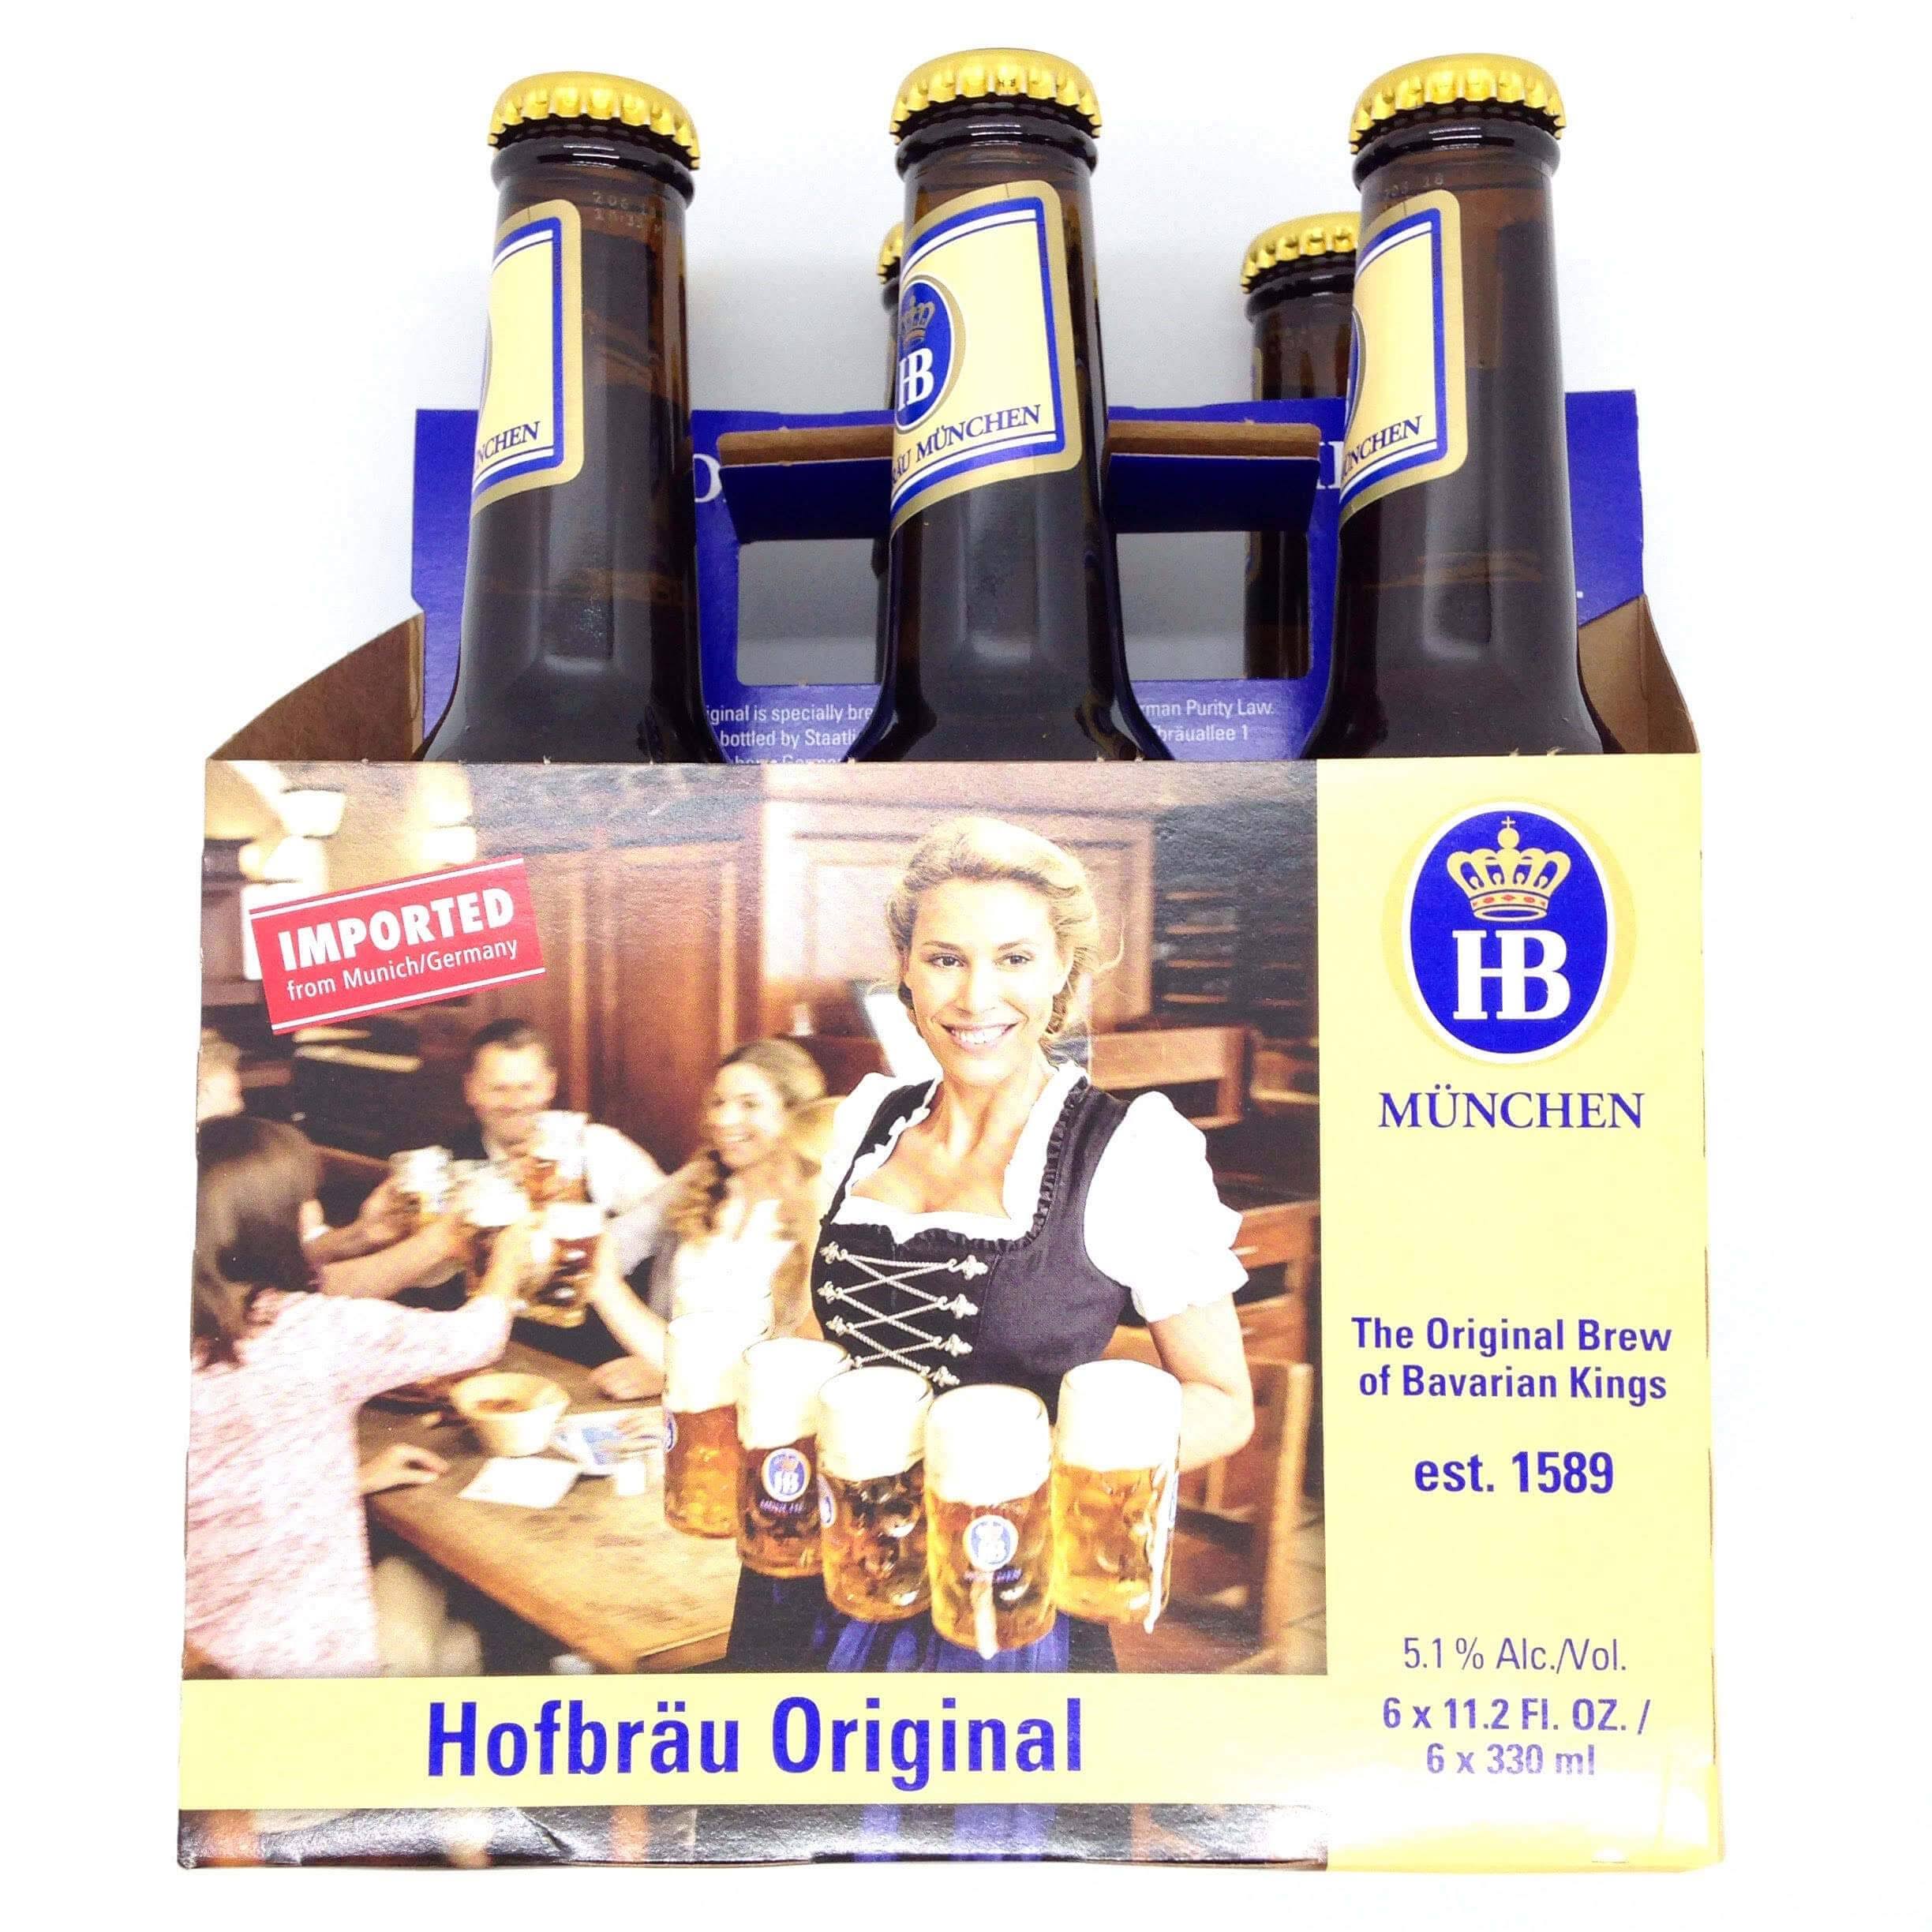 Hofbrau Munchen Beer, Hofbrau Original - 6 pack, 11.2 fl oz bottles